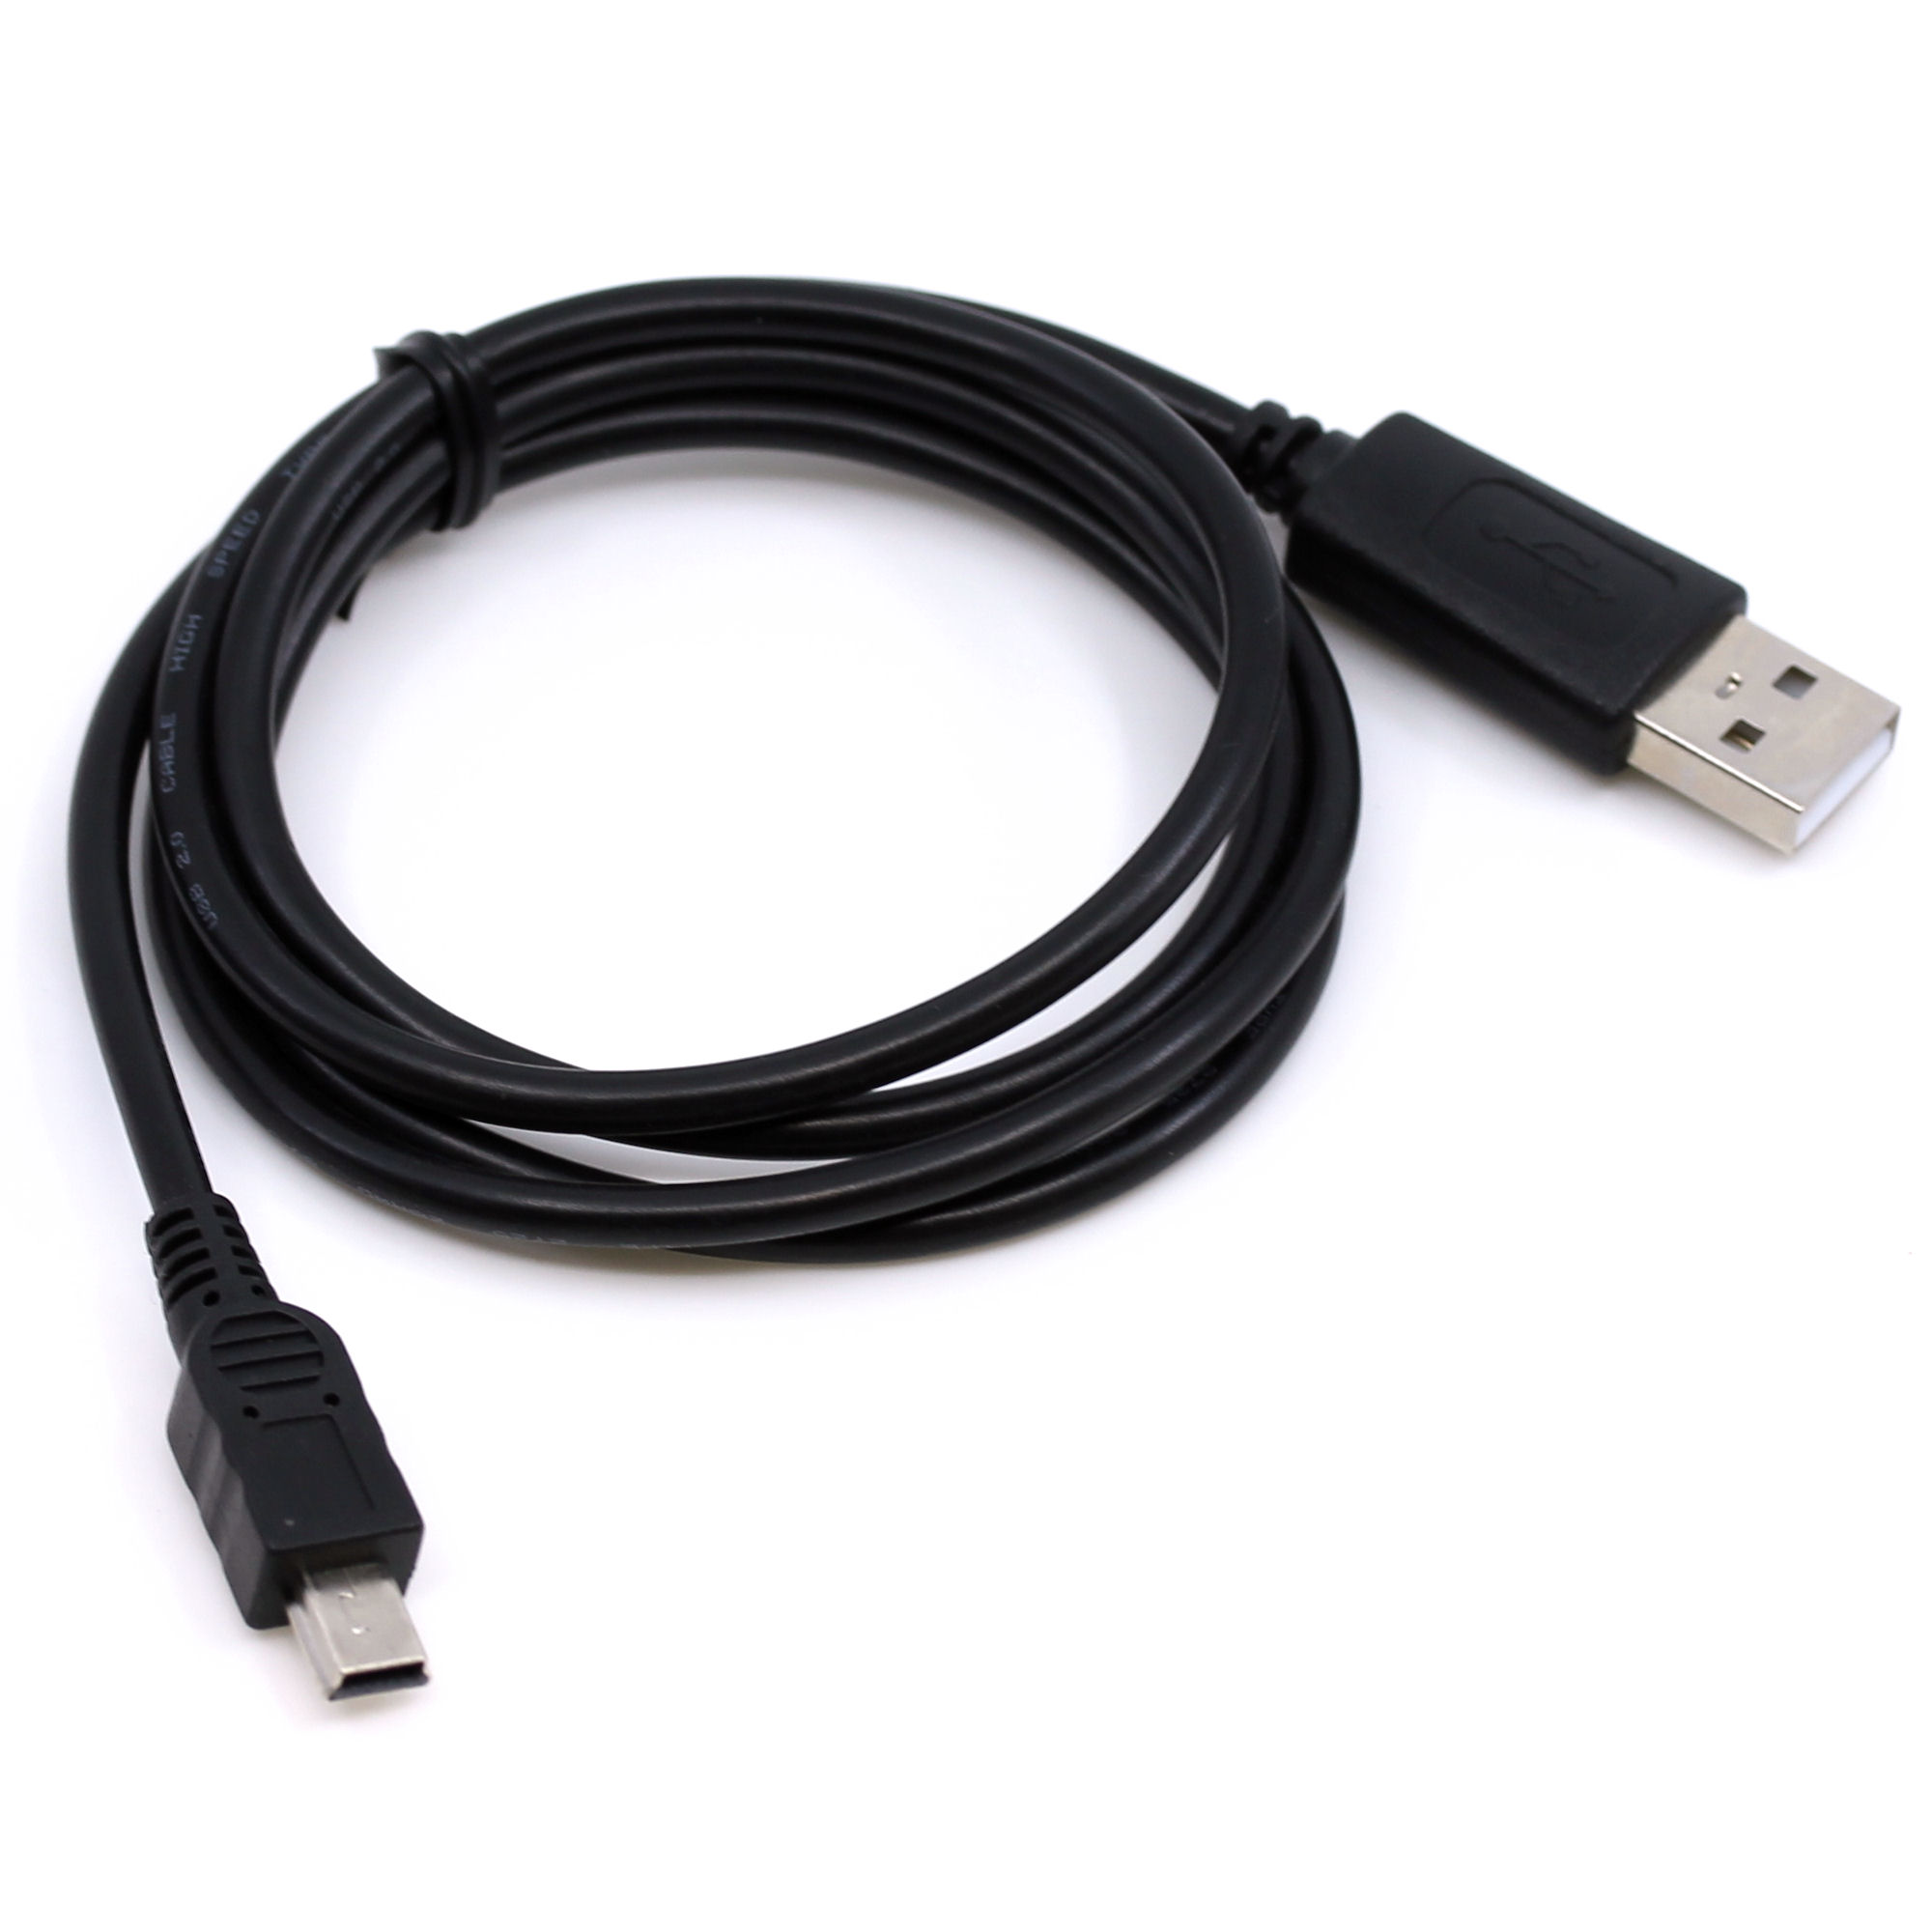 USB Datenkabel für JVC GR-DV400, GR-DV500, GR-DV500E, GR-DV600, GR-DV700, GR-DV800, GR-DV801